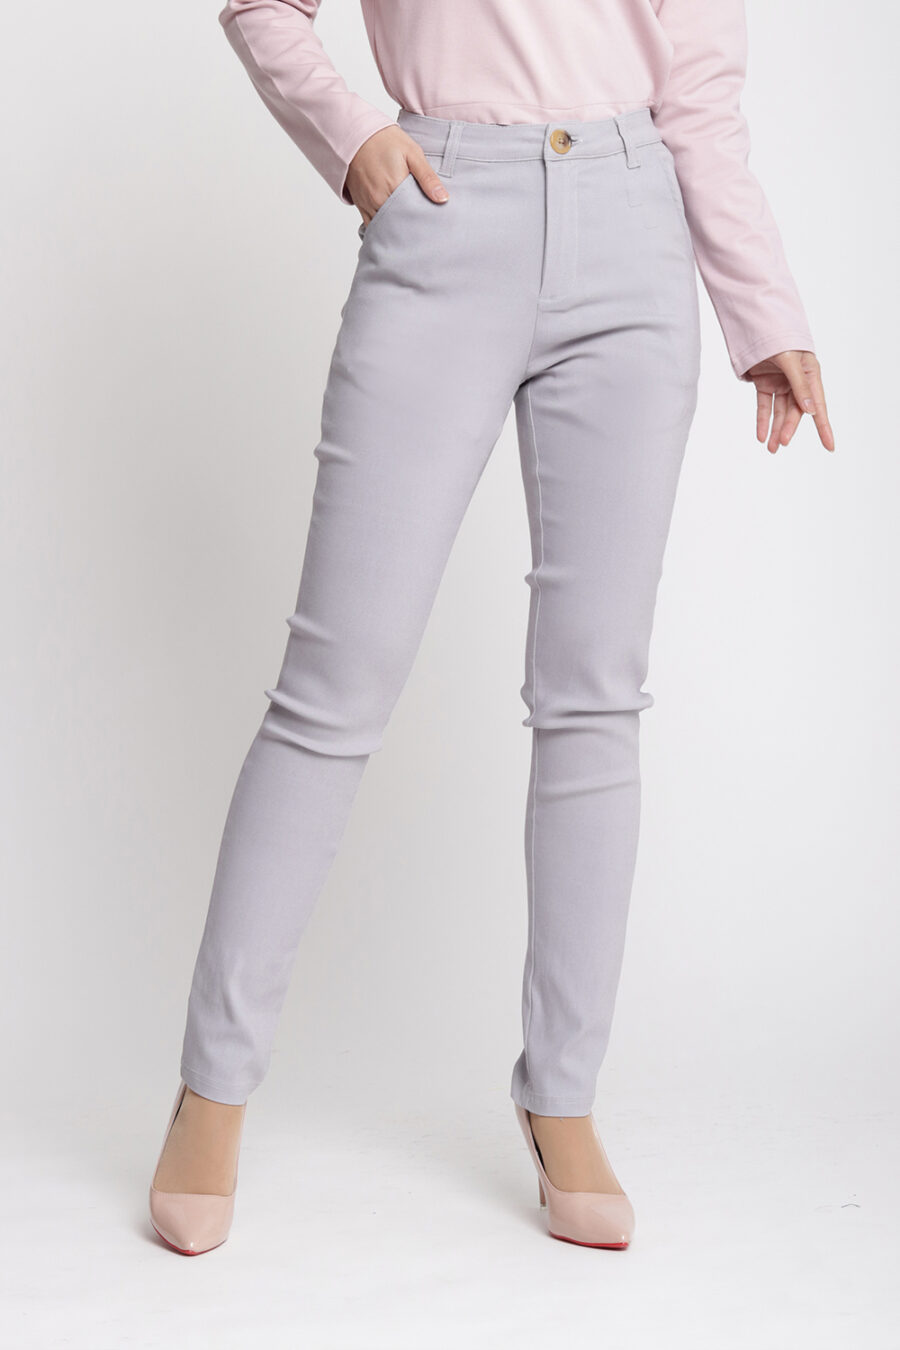 Zeera Skinny Pants Grey